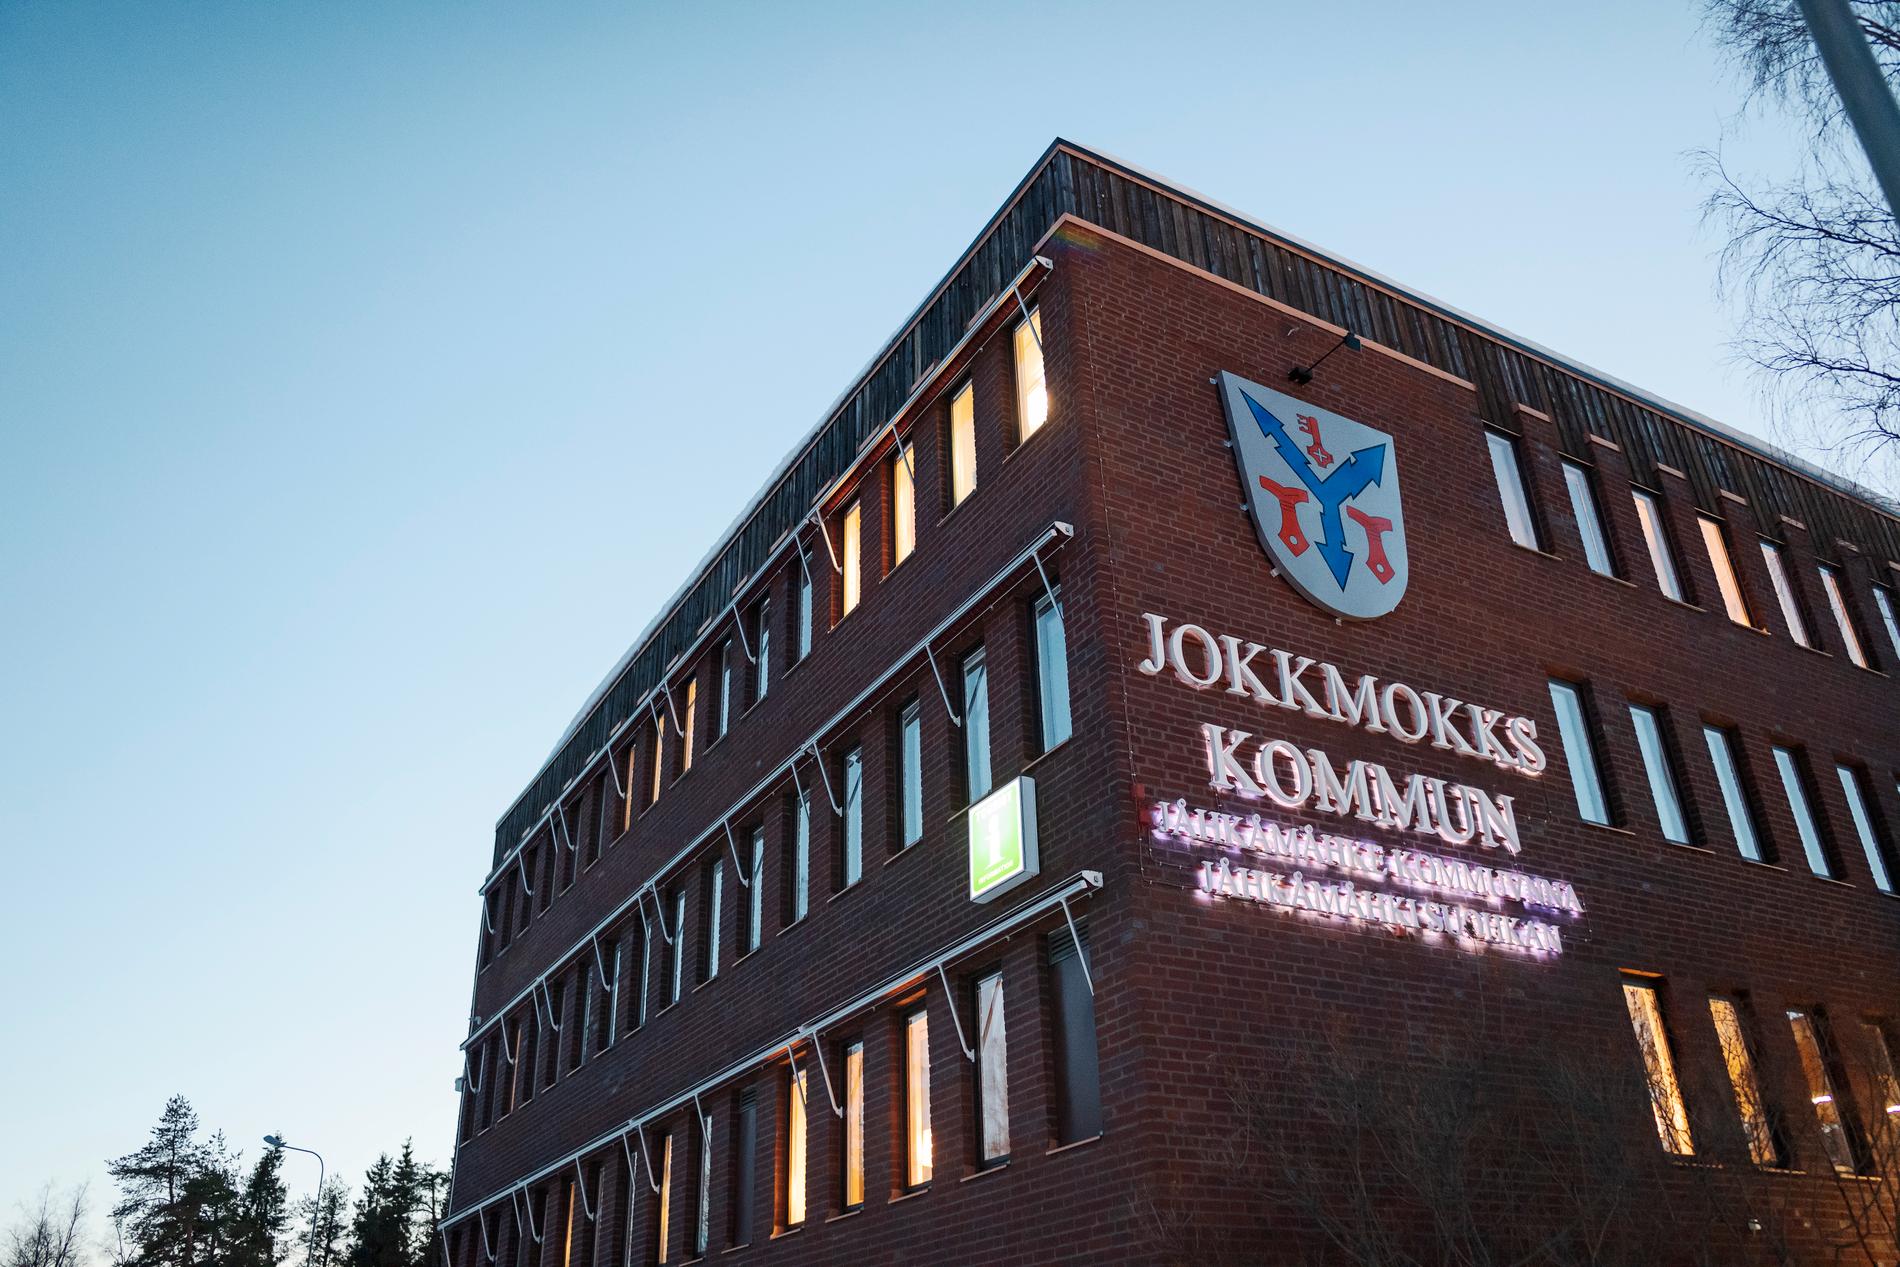 I Jokkmokks kommun är skillnaden mellan kommunchefen och kommunstyrelsens ordförande störst i Sverige. Där skiljer lönerna med 139 procent.